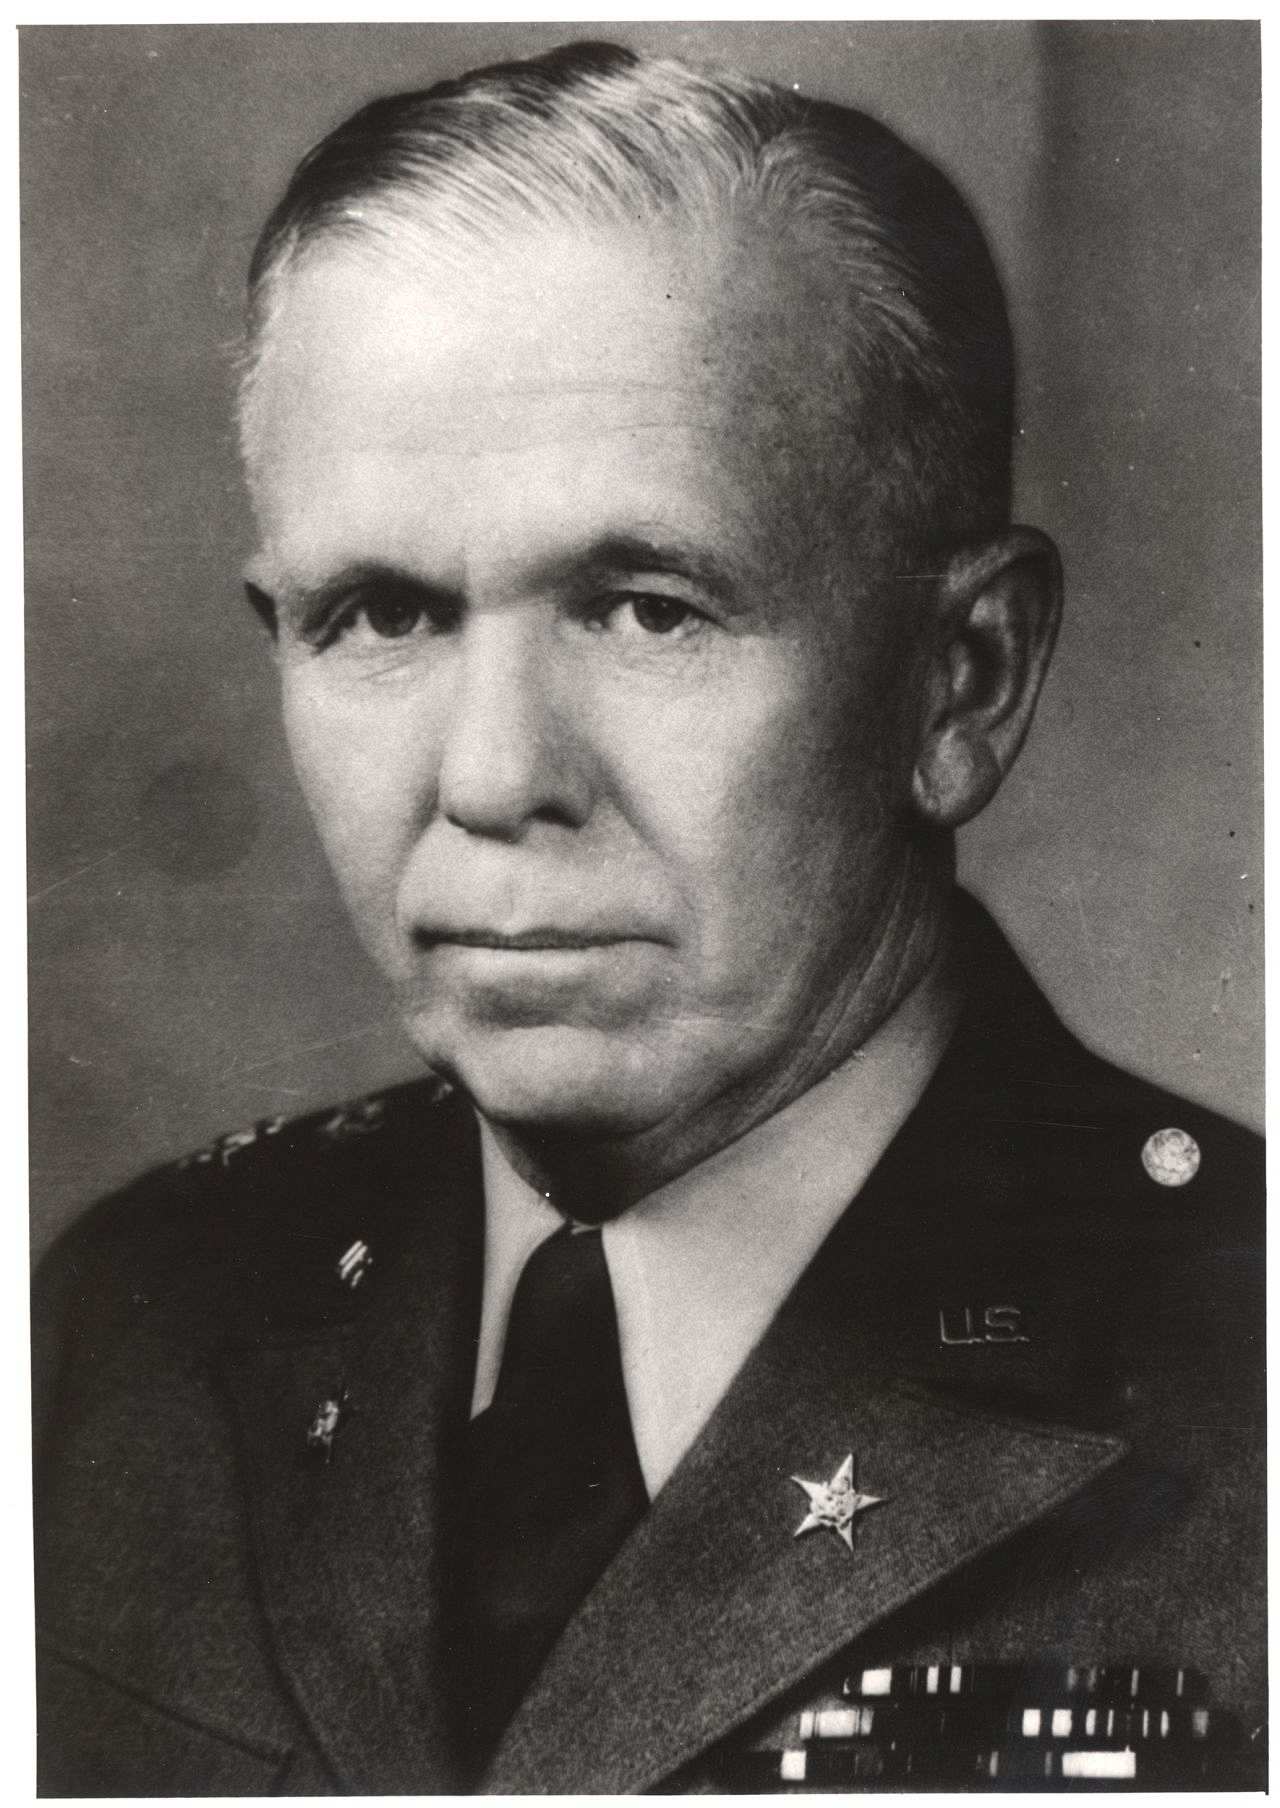 Porträtfoto von George C. Marshall, 1947.